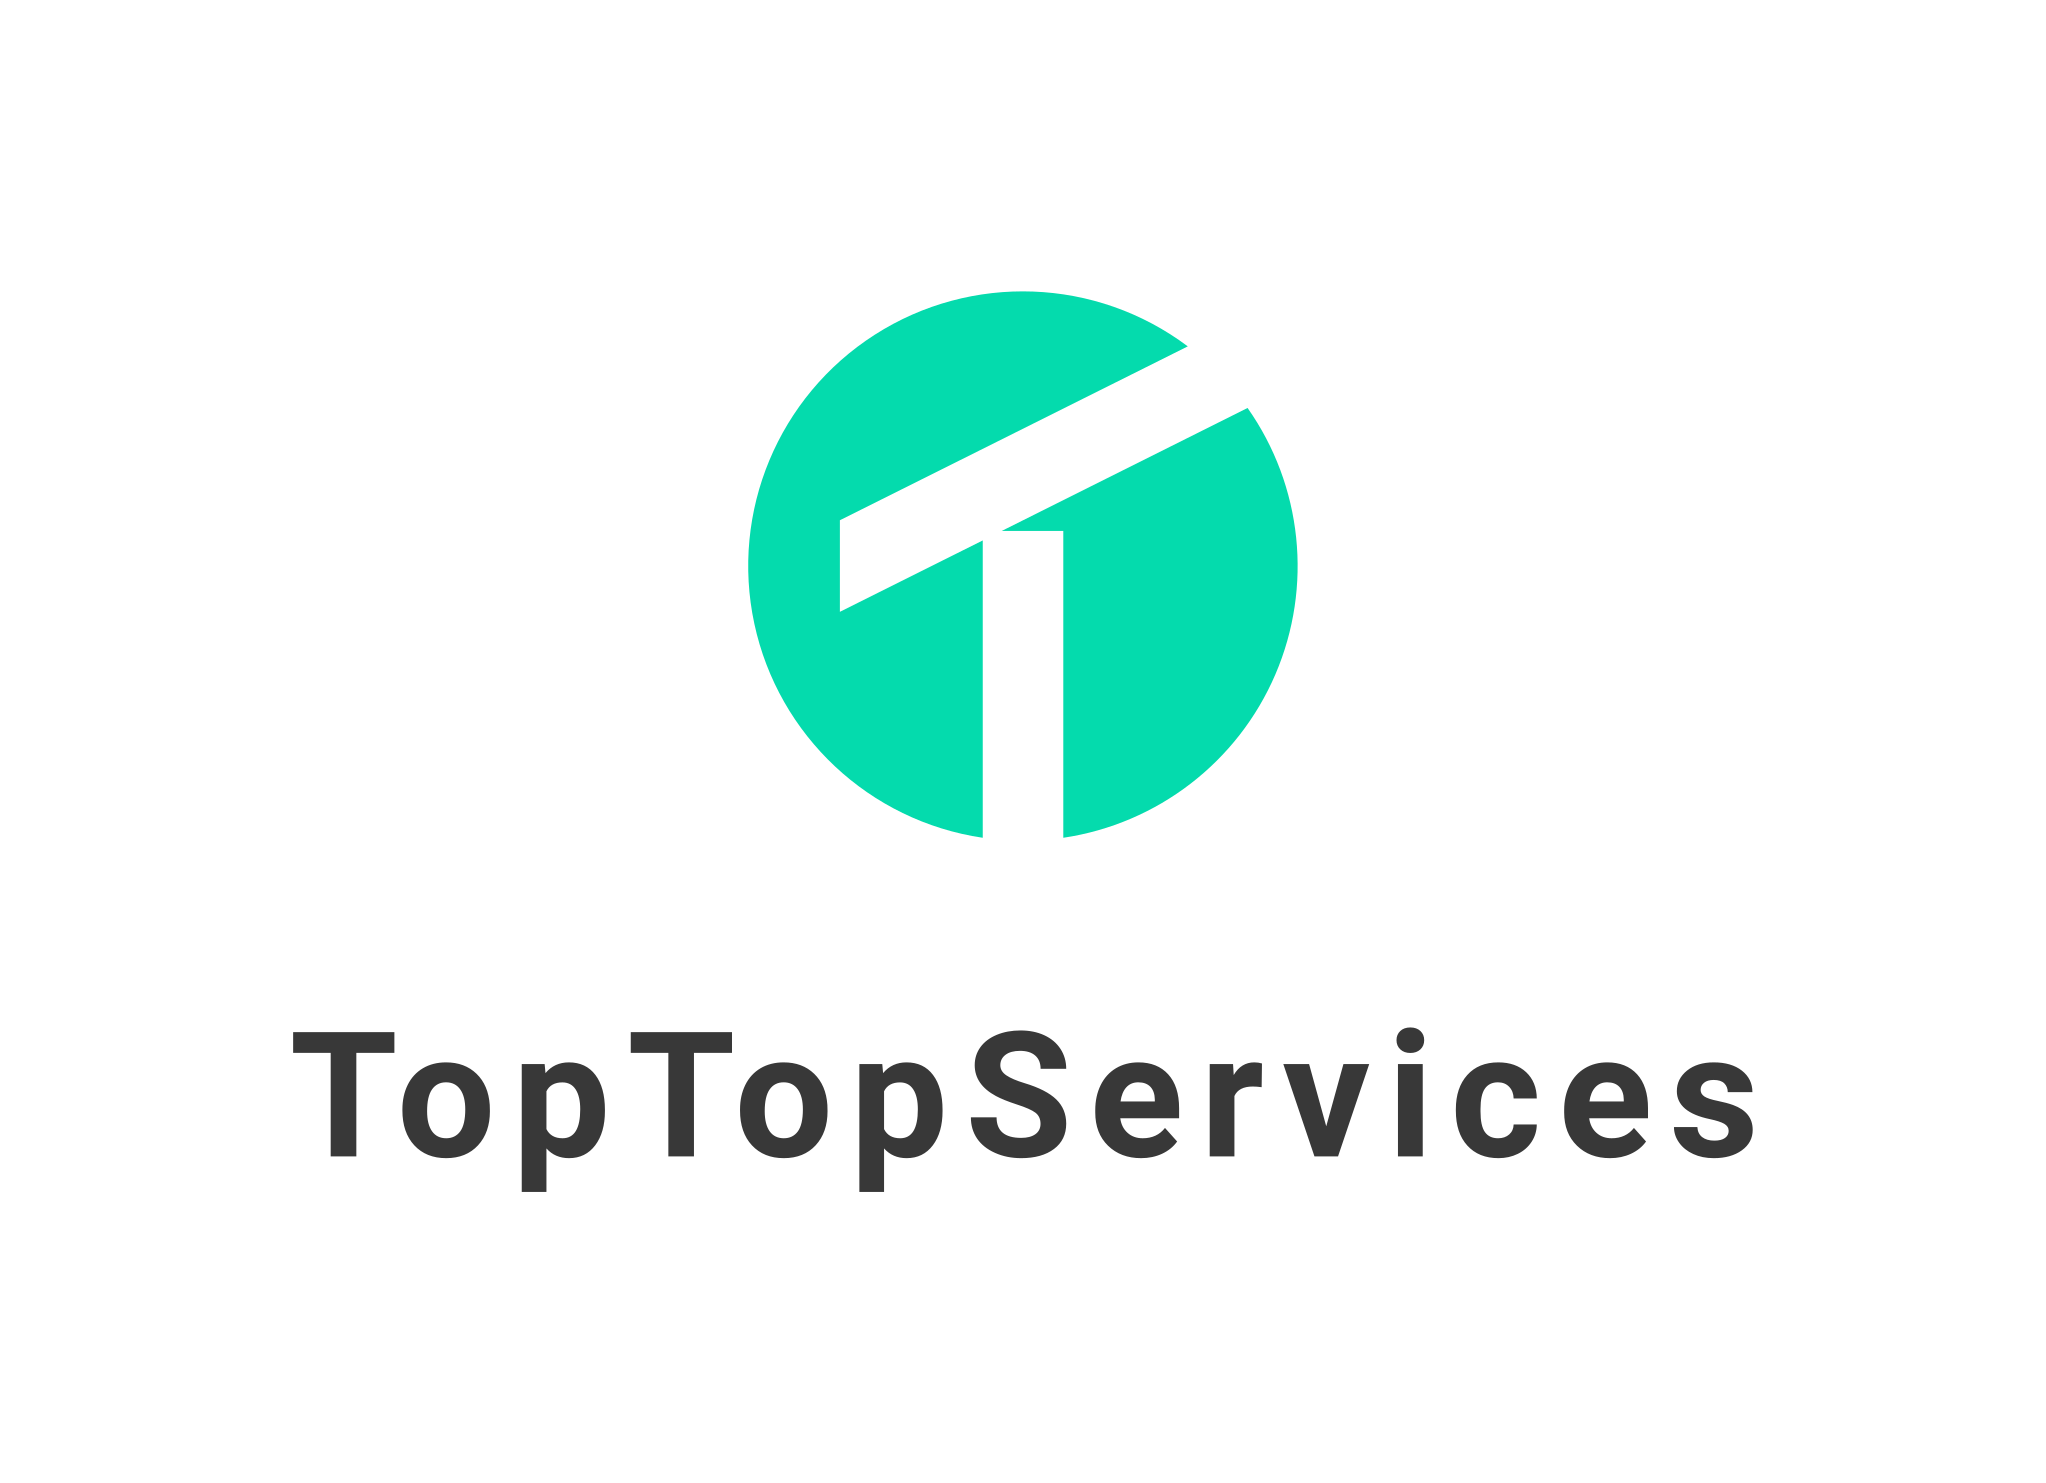 Top TopServices Windows logo